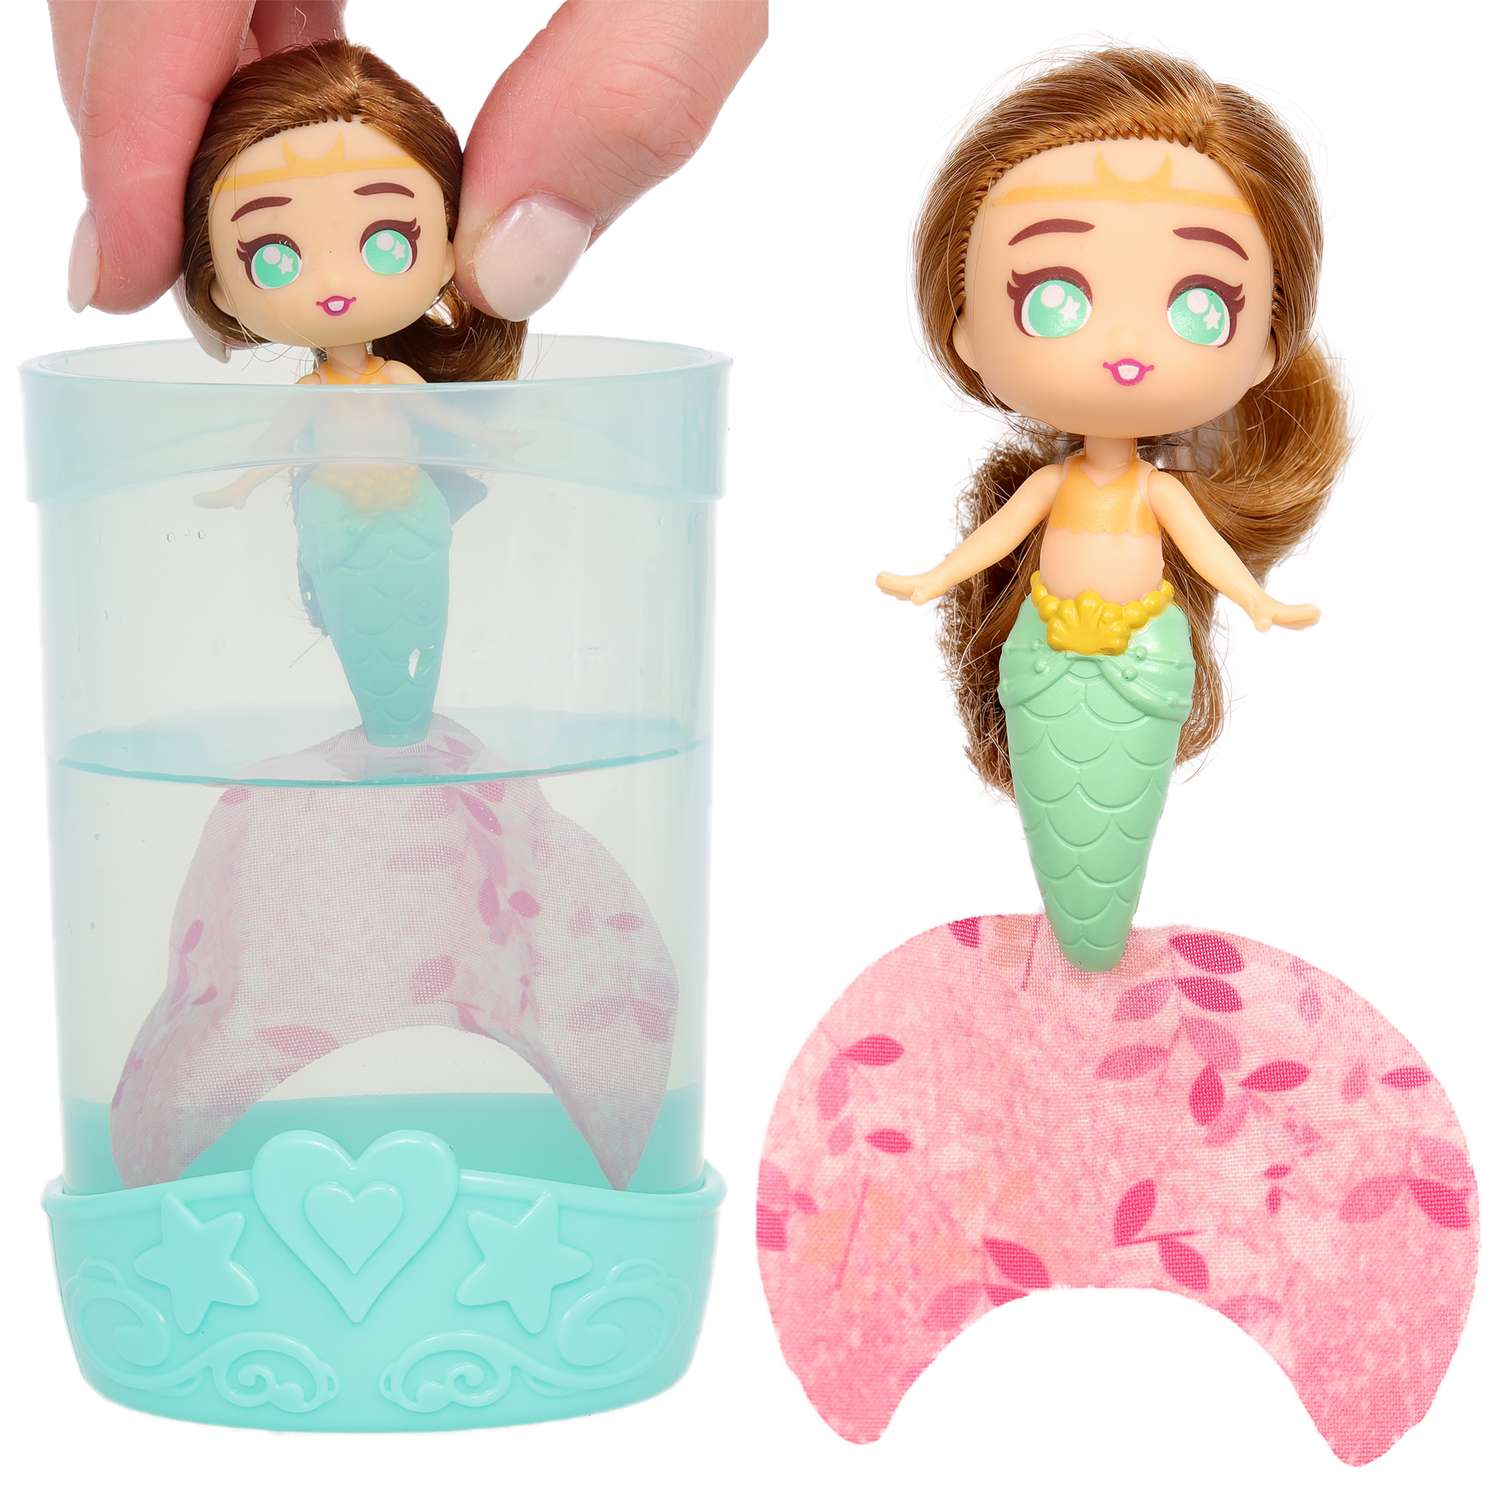 Кукла-сюрприз SEASTERS СиСтерс Принцесса русалка Грейс набор с бассейном аксессуарами и питомцем EAT15800 - фото 8